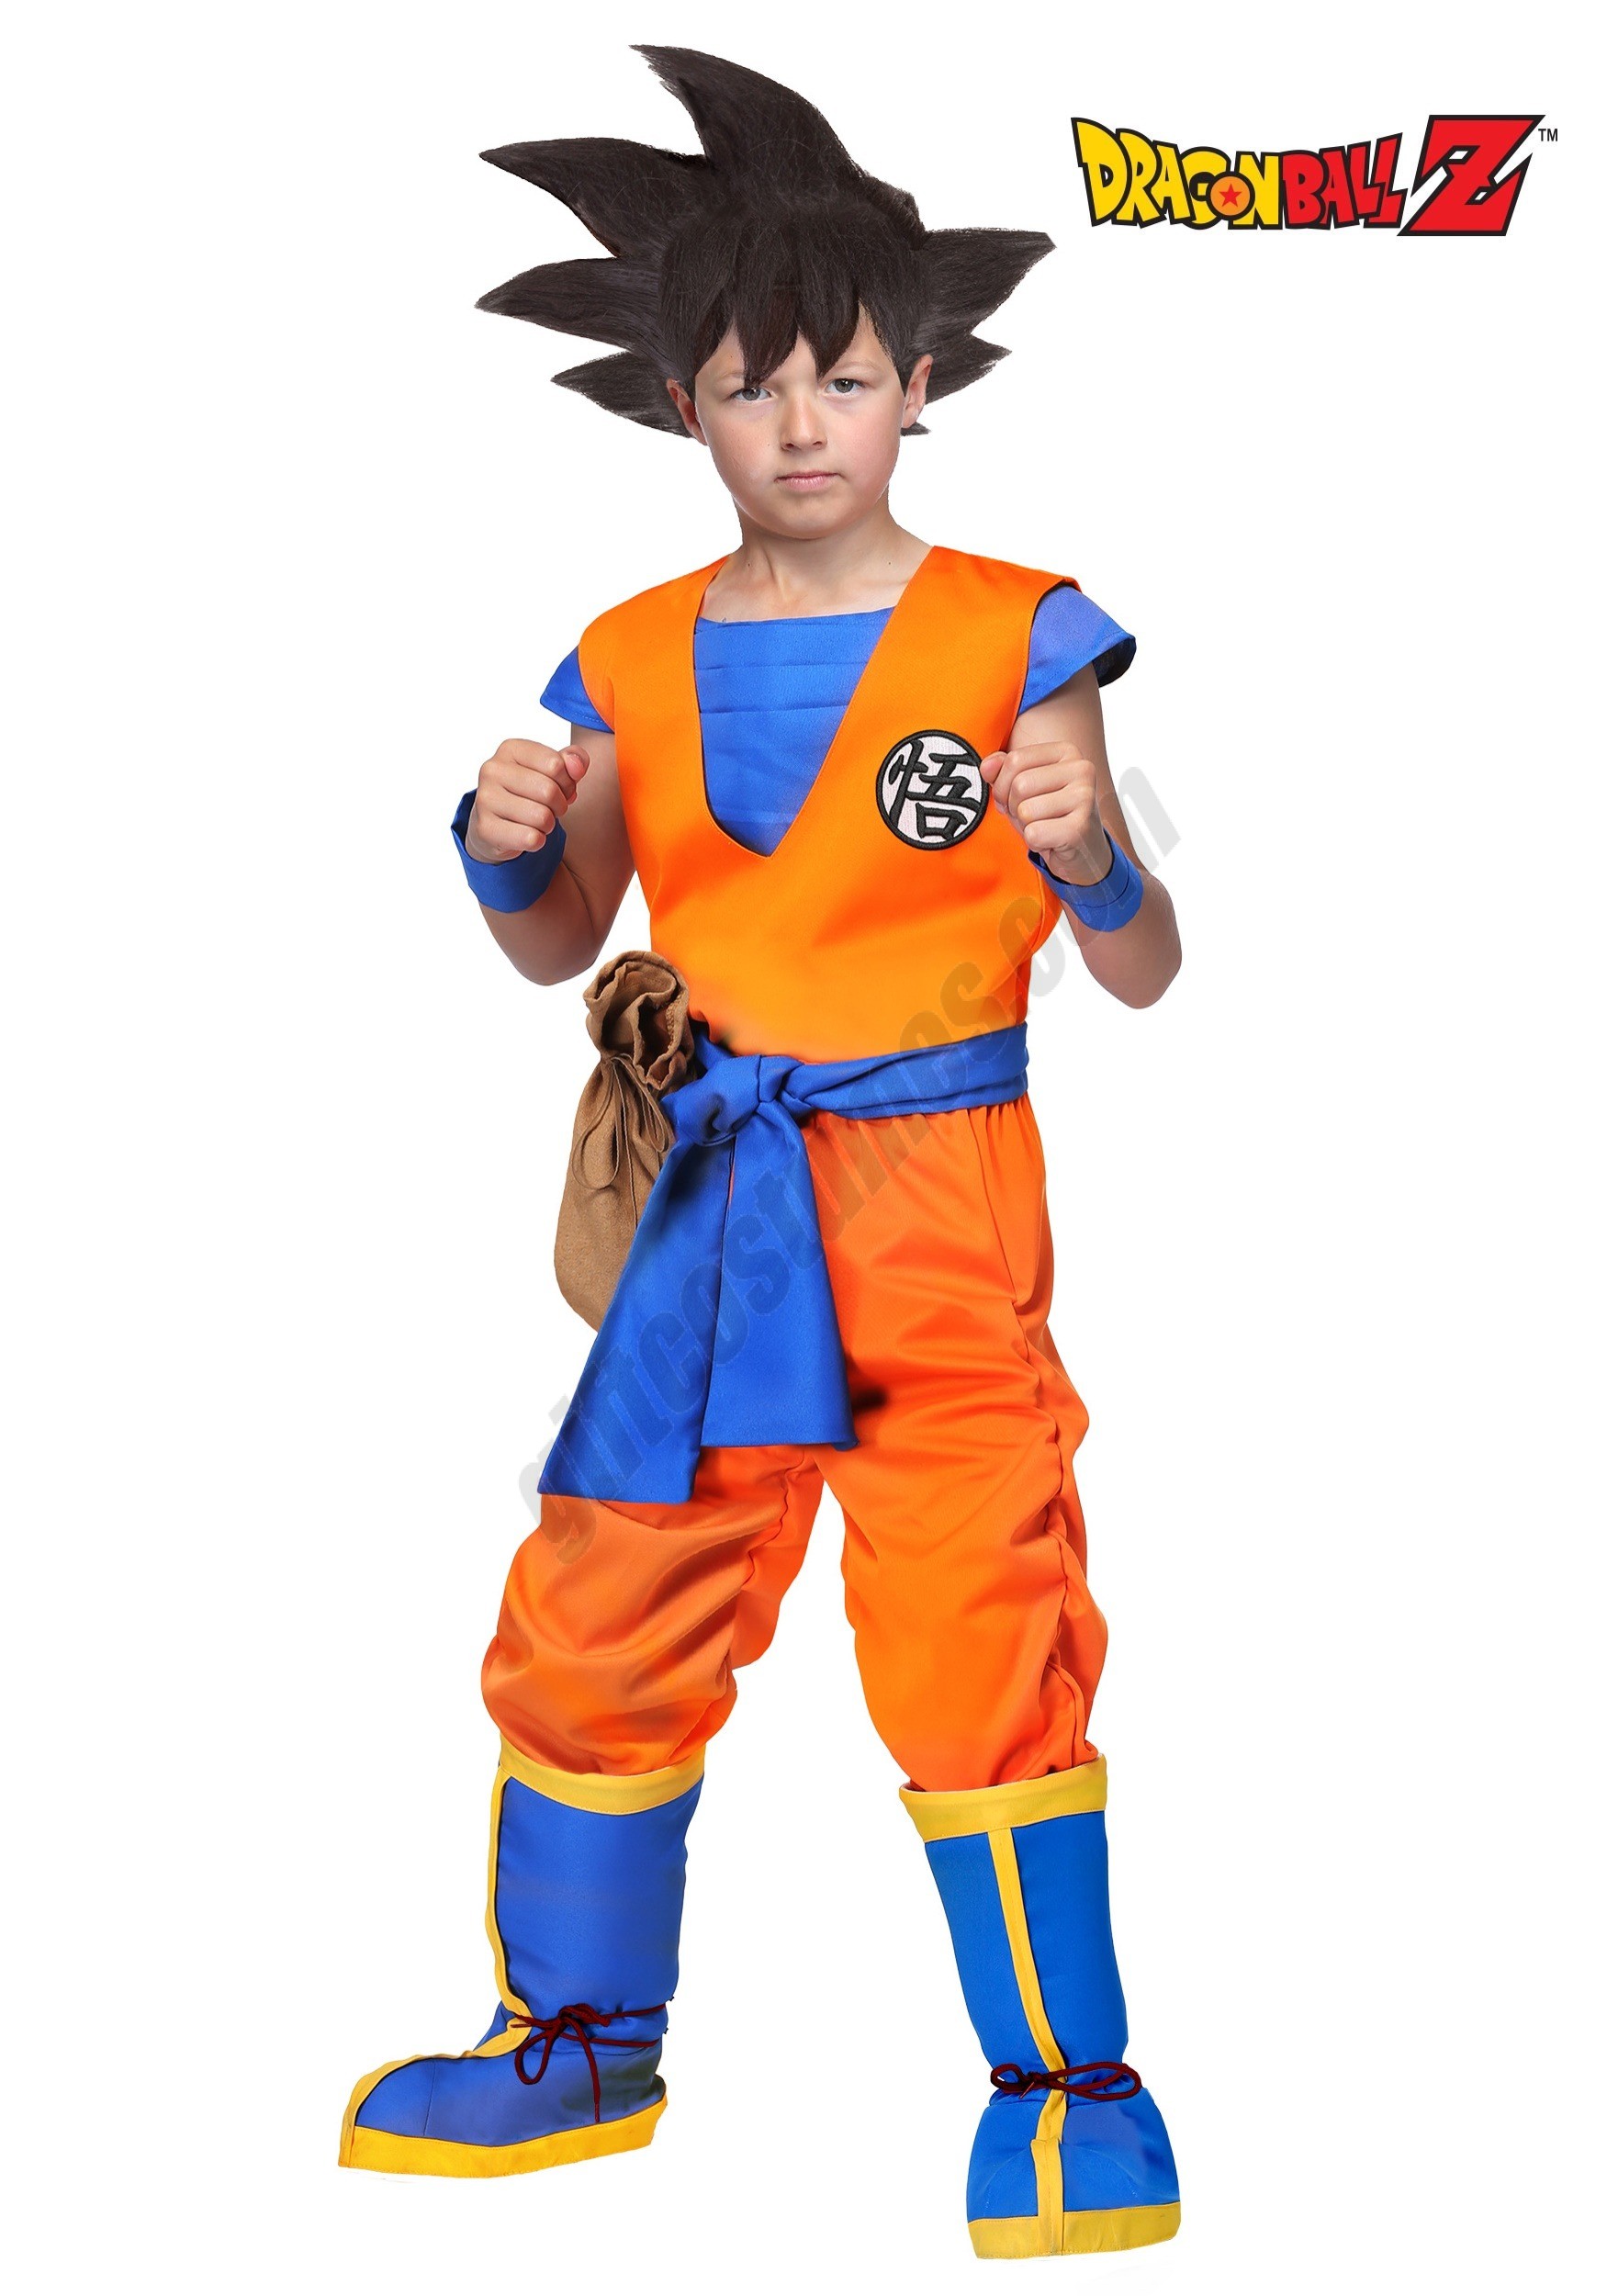 Dragon Ball Z Authentic Goku Kids Costume Promotions - Dragon Ball Z Authentic Goku Kids Costume Promotions